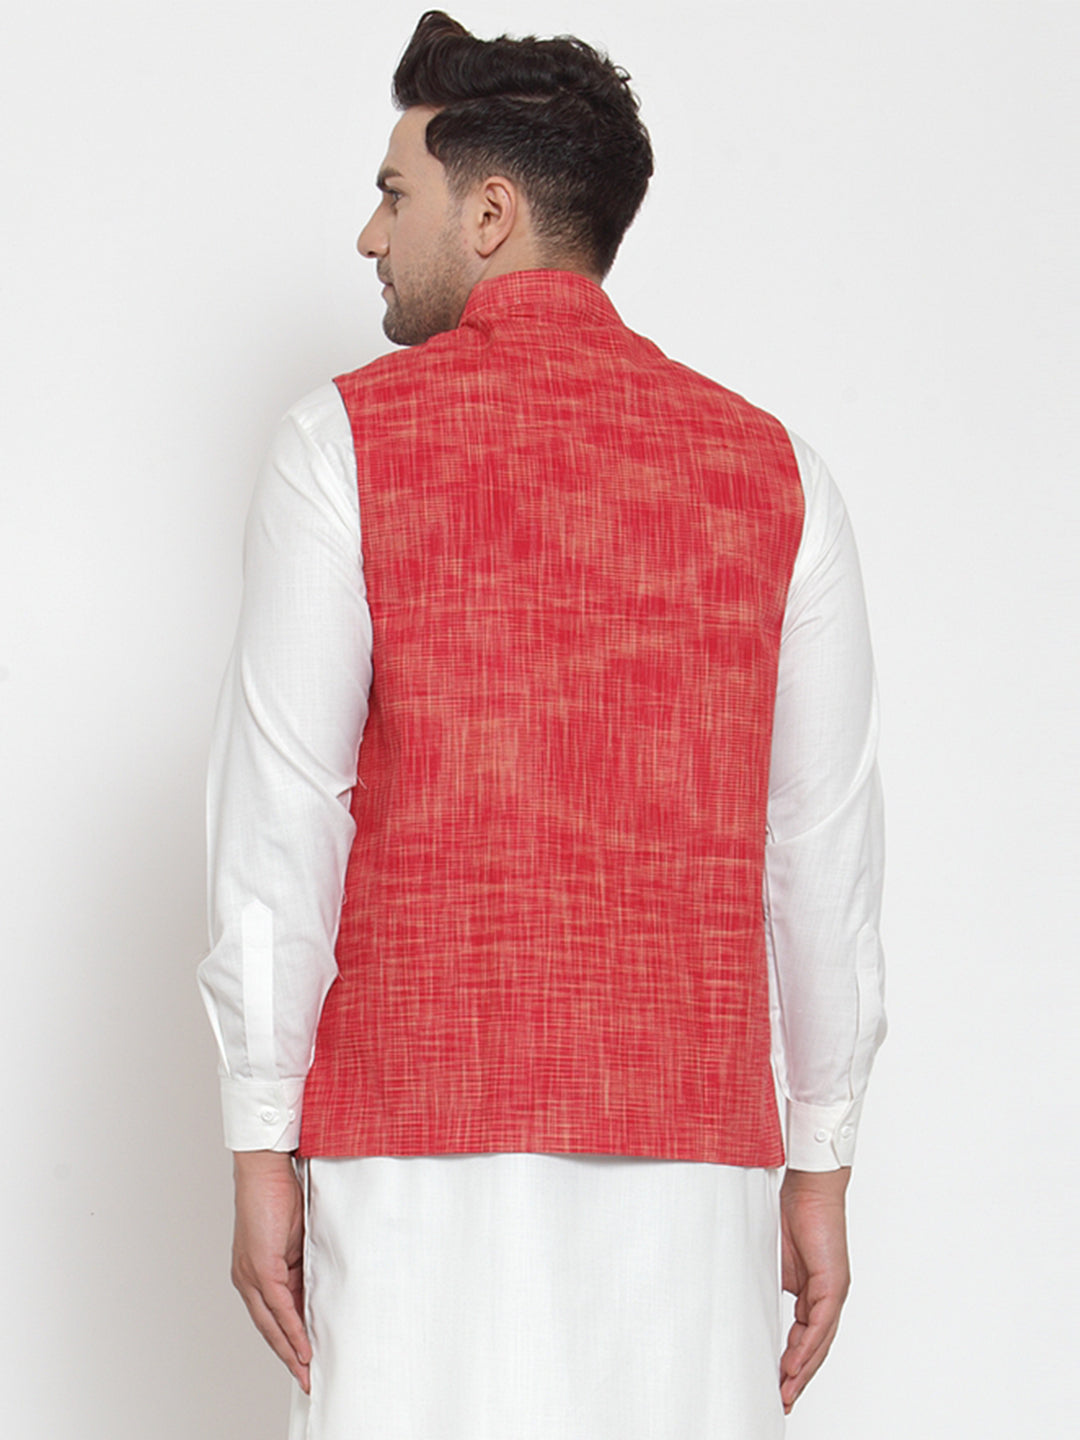 Jompers Men's Red Woven Design Nehru Jacket